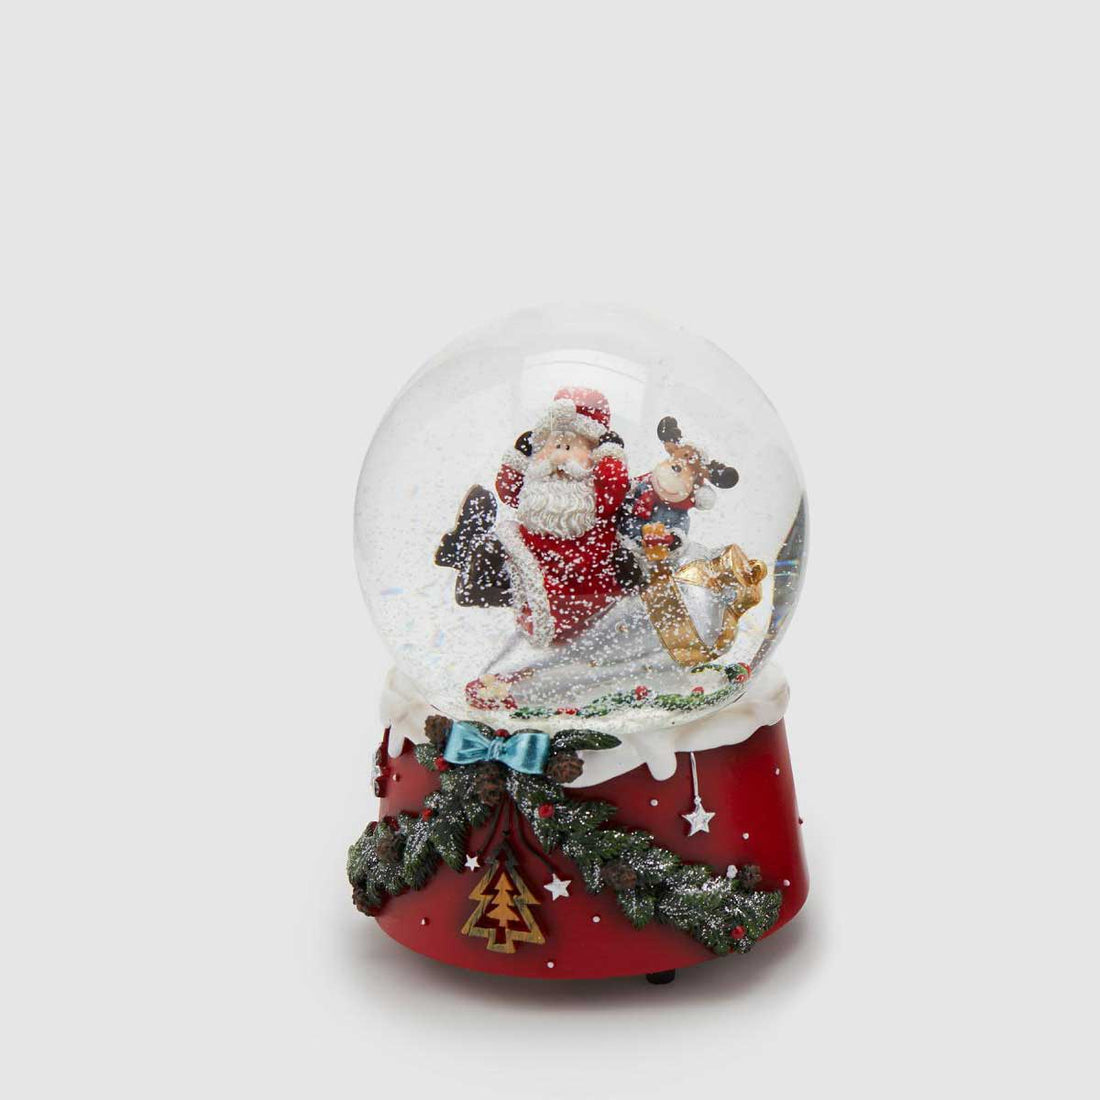 EDG Palla Globo di Neve con Babbo Natale c/Carillon 15cm Decorazione Natalizia